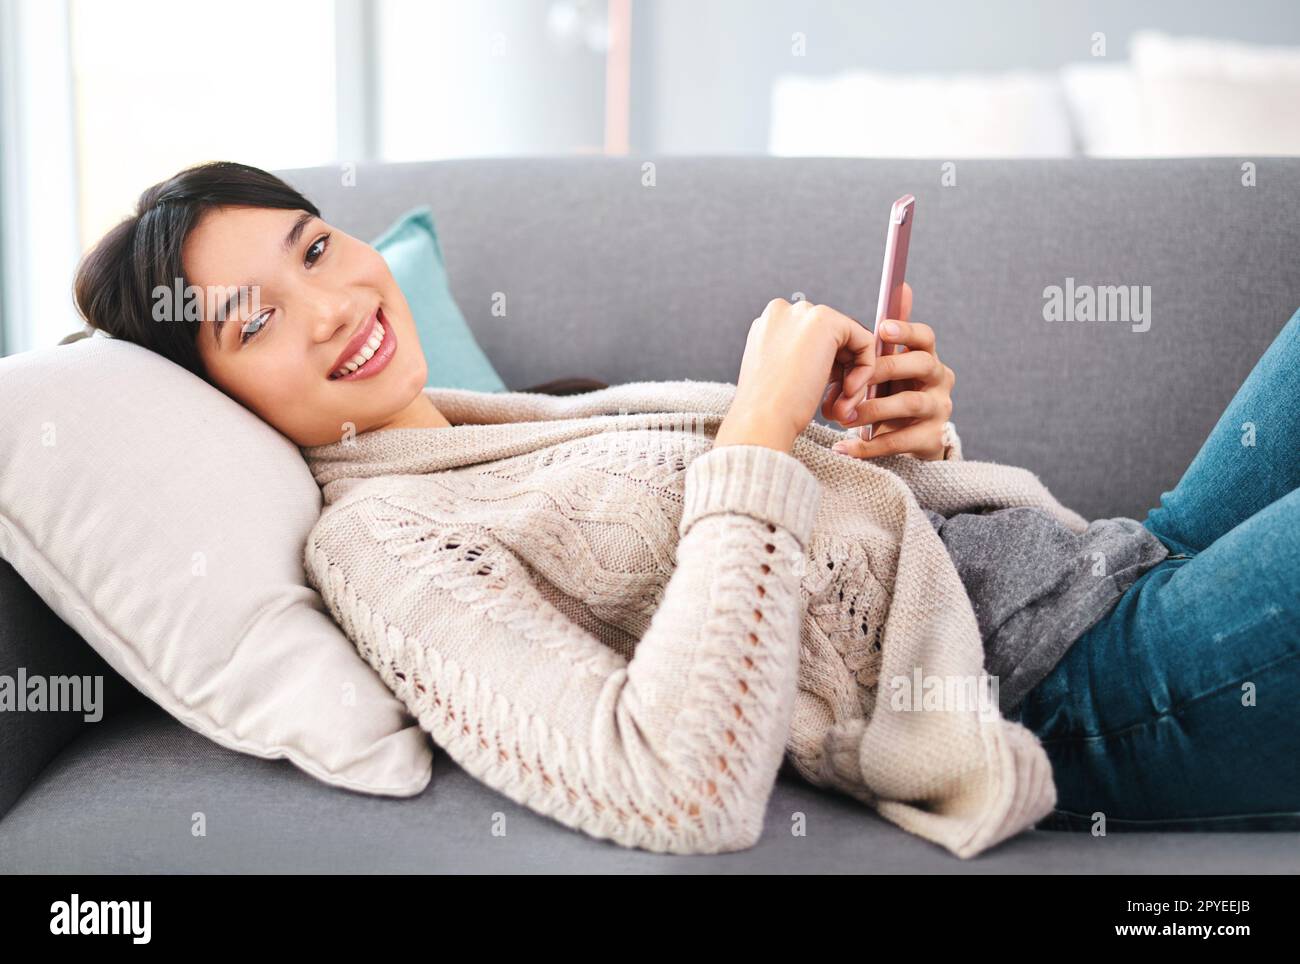 Fare ciò che noi giovani facciamo meglio. Ritratto di una giovane donna allegra che naviga sul cellulare mentre si rilassa su un divano a casa durante il giorno. Foto Stock